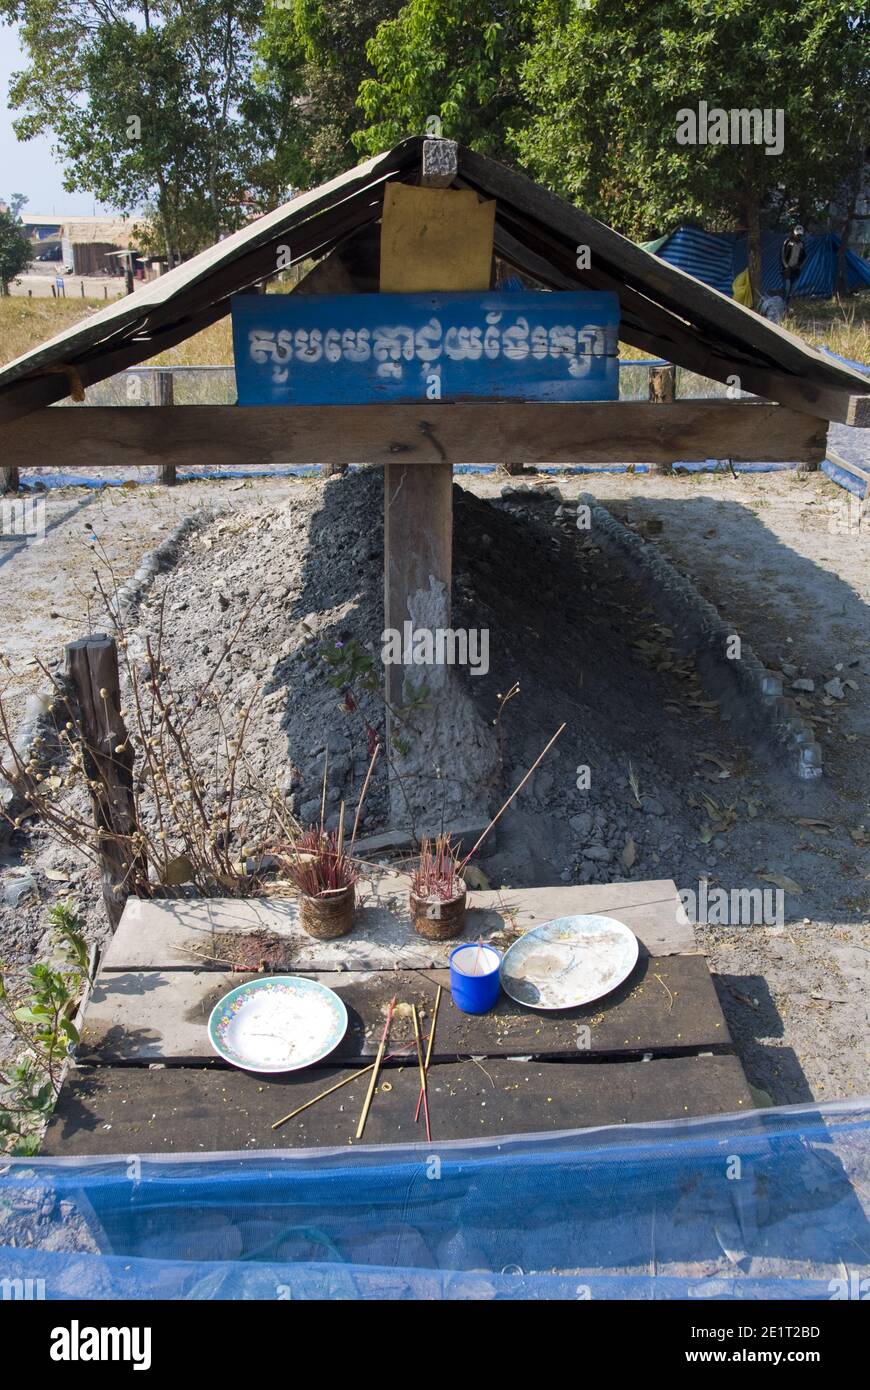 Des assiettes contiennent des offrandes et des bâtonnets d'encens à la tombe du dictateur cambodgien Pol Pot, chef des Khmers rouges de 1963 à 1998 à Anlong Veng, au Cambodge. Banque D'Images